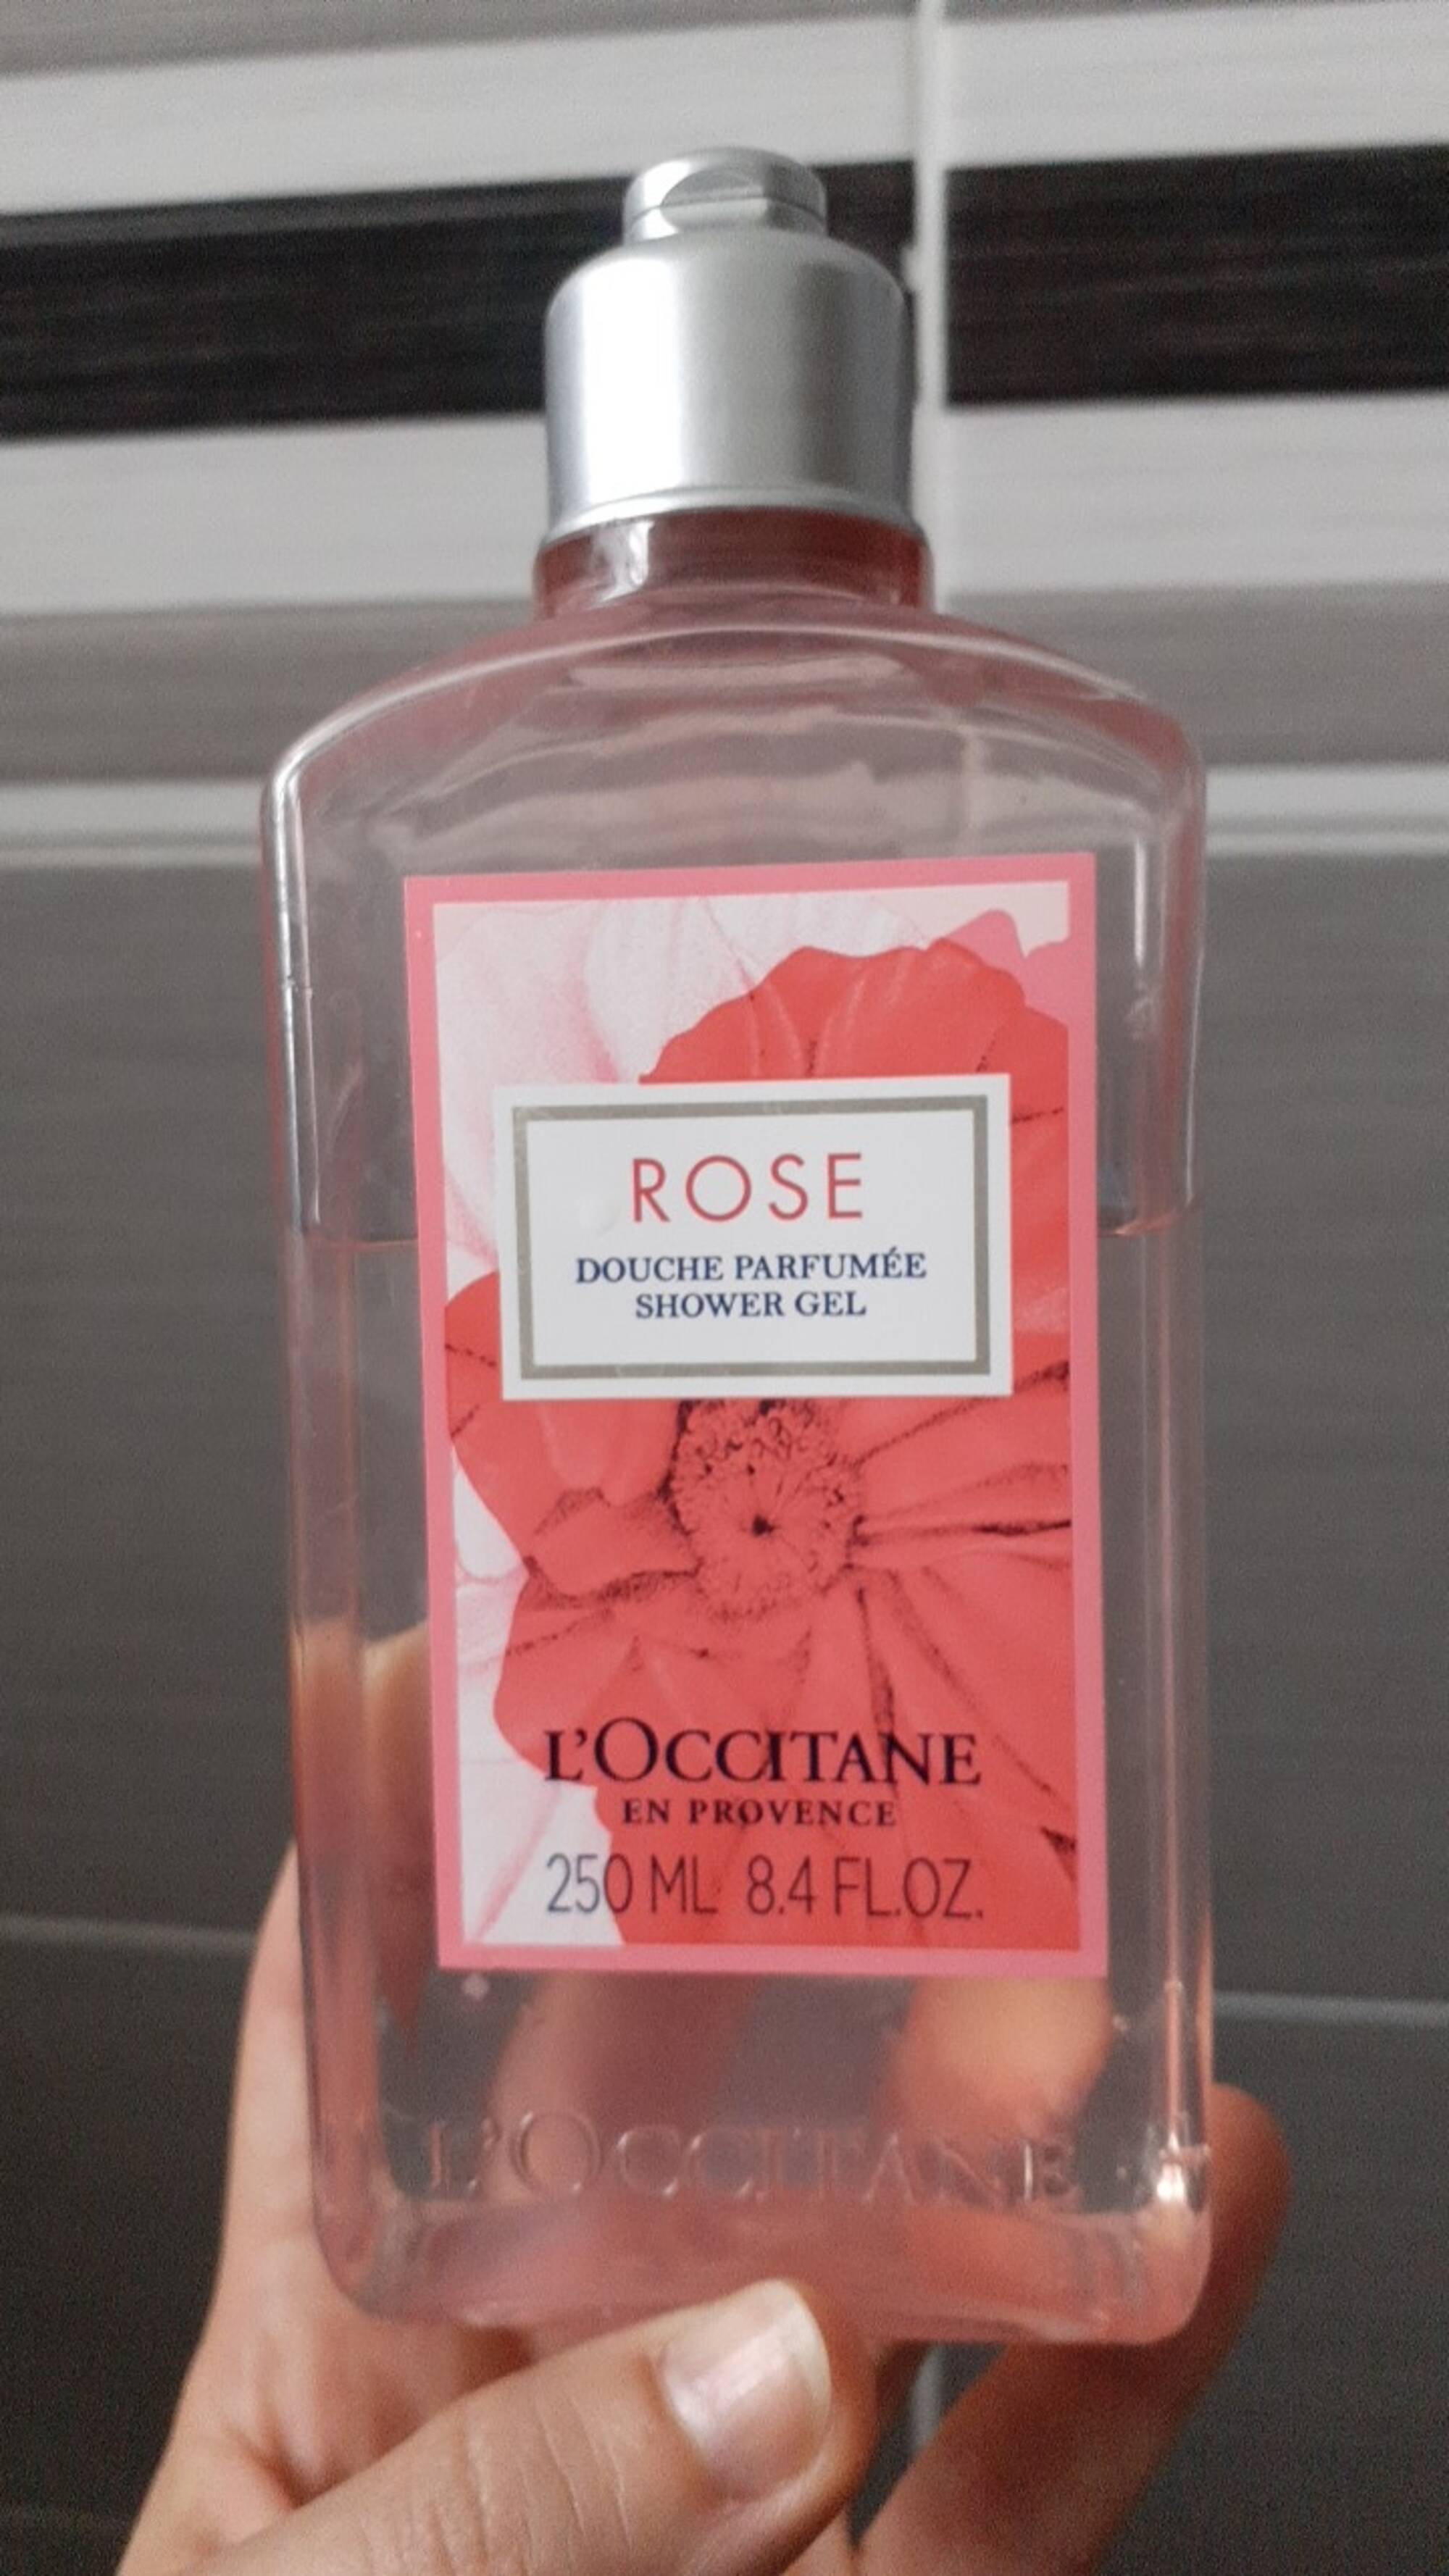 L'OCCITANE - Rose - Douche parfumée